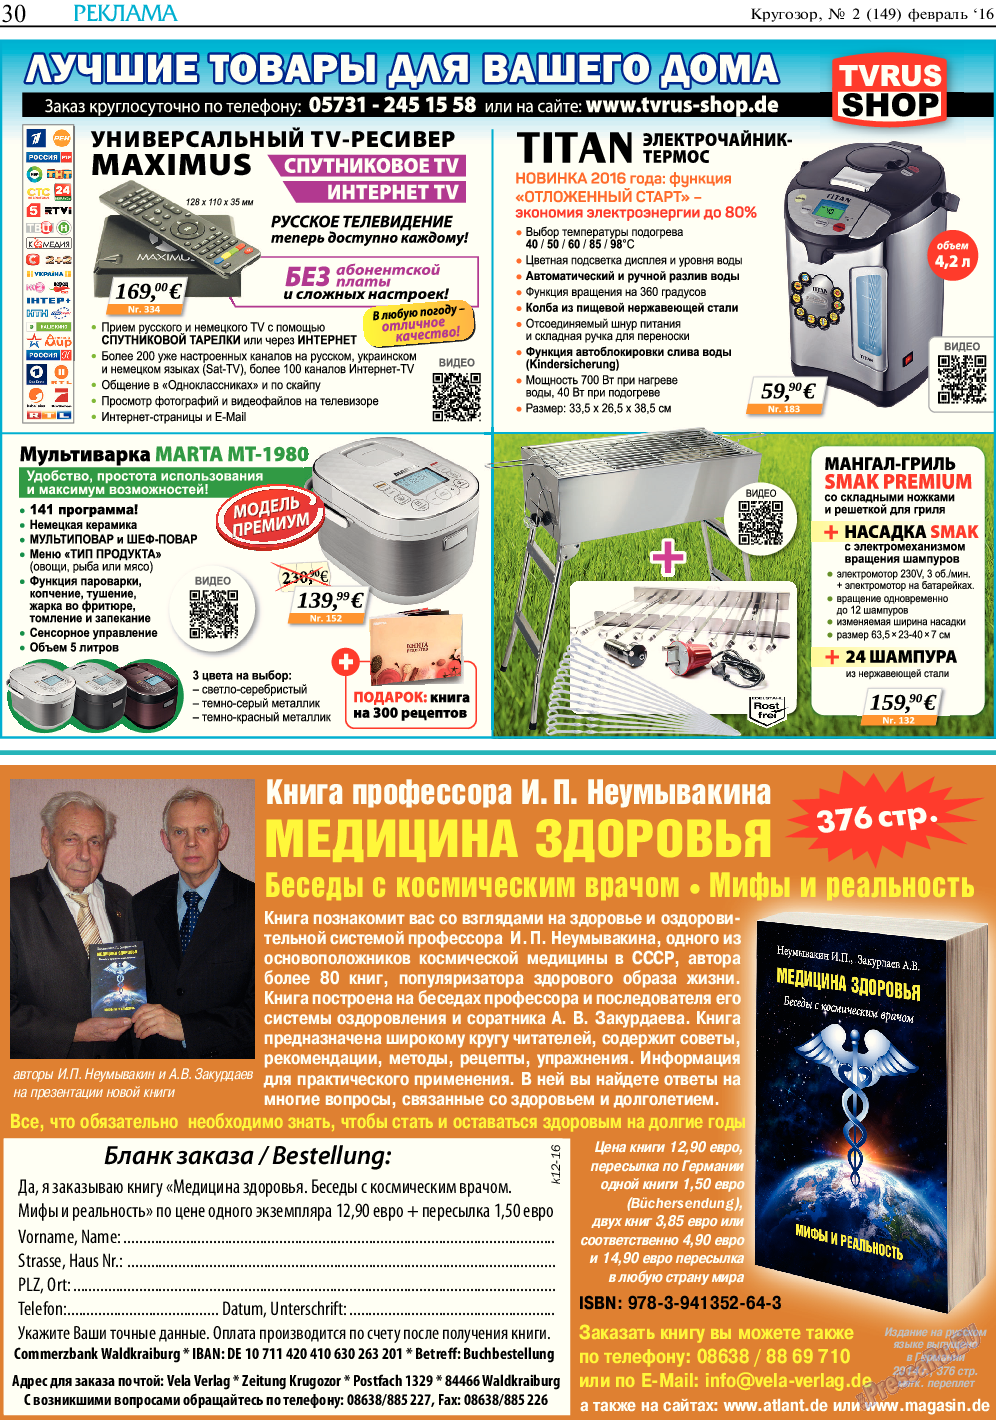 Кругозор (газета). 2016 год, номер 2, стр. 30